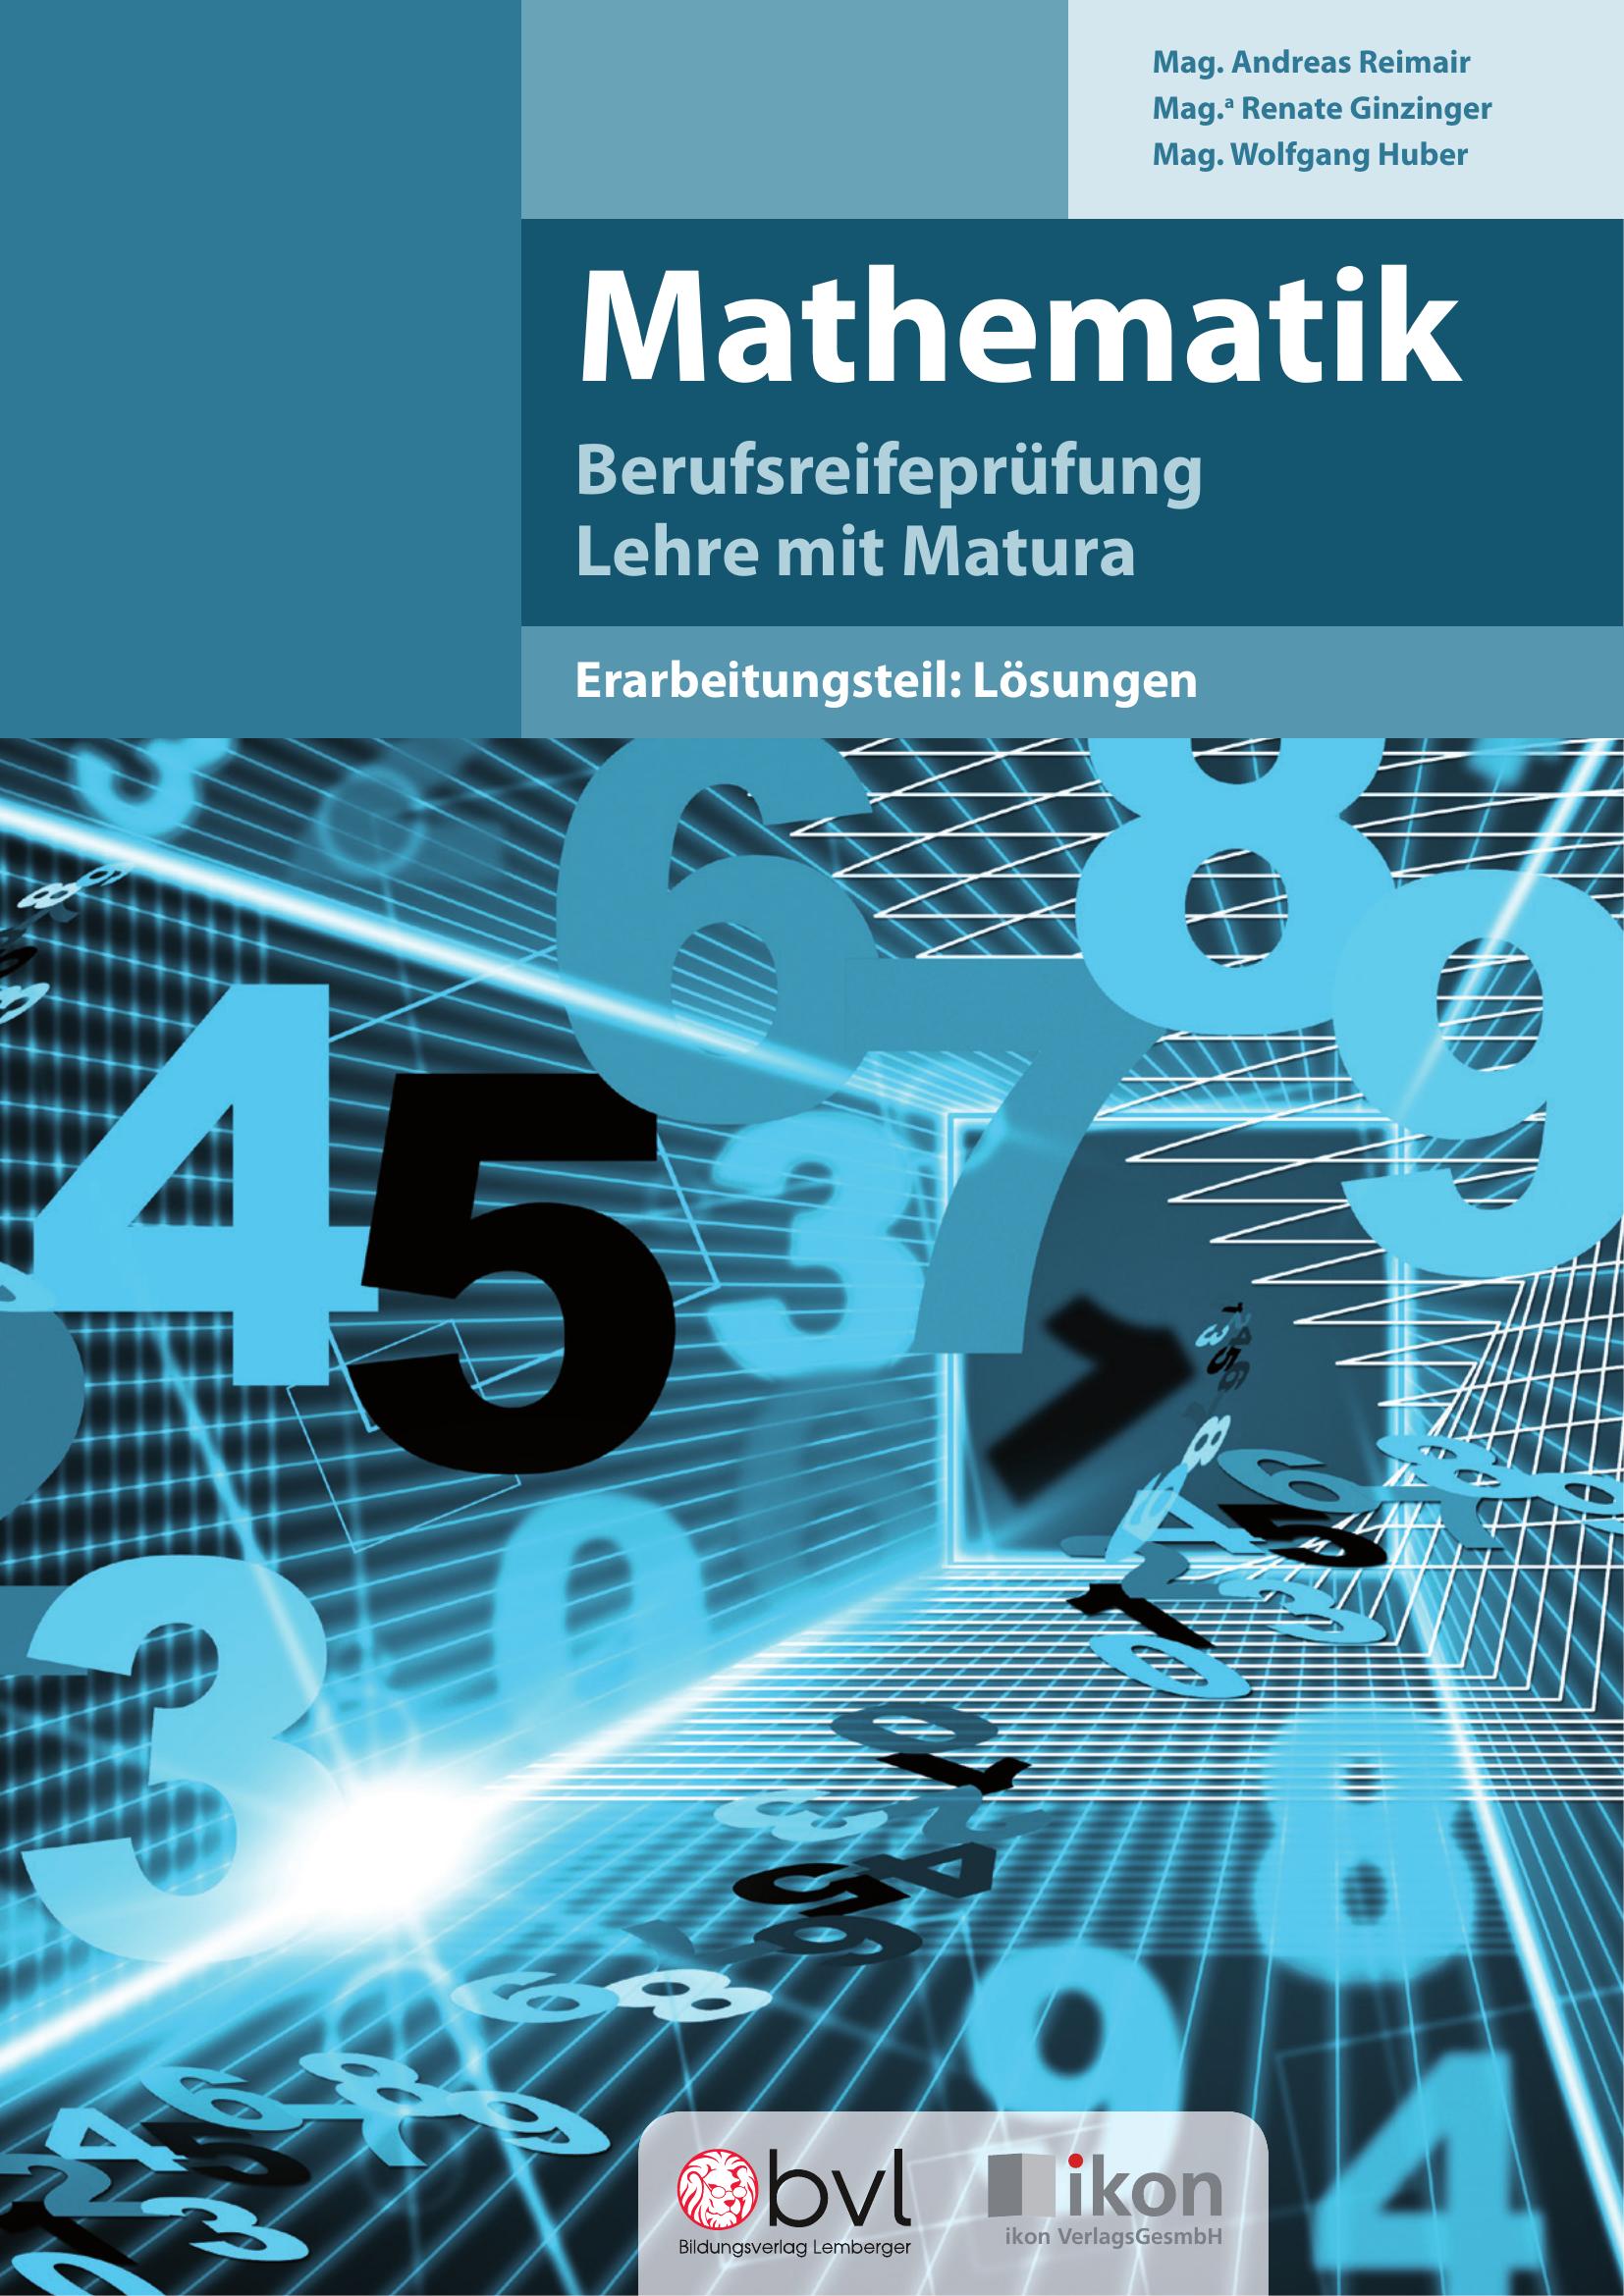 Berufsreifeprüfung Mathematik - Erarbeitungsteil: Lösungen_Ausgabe BFI Salzburg